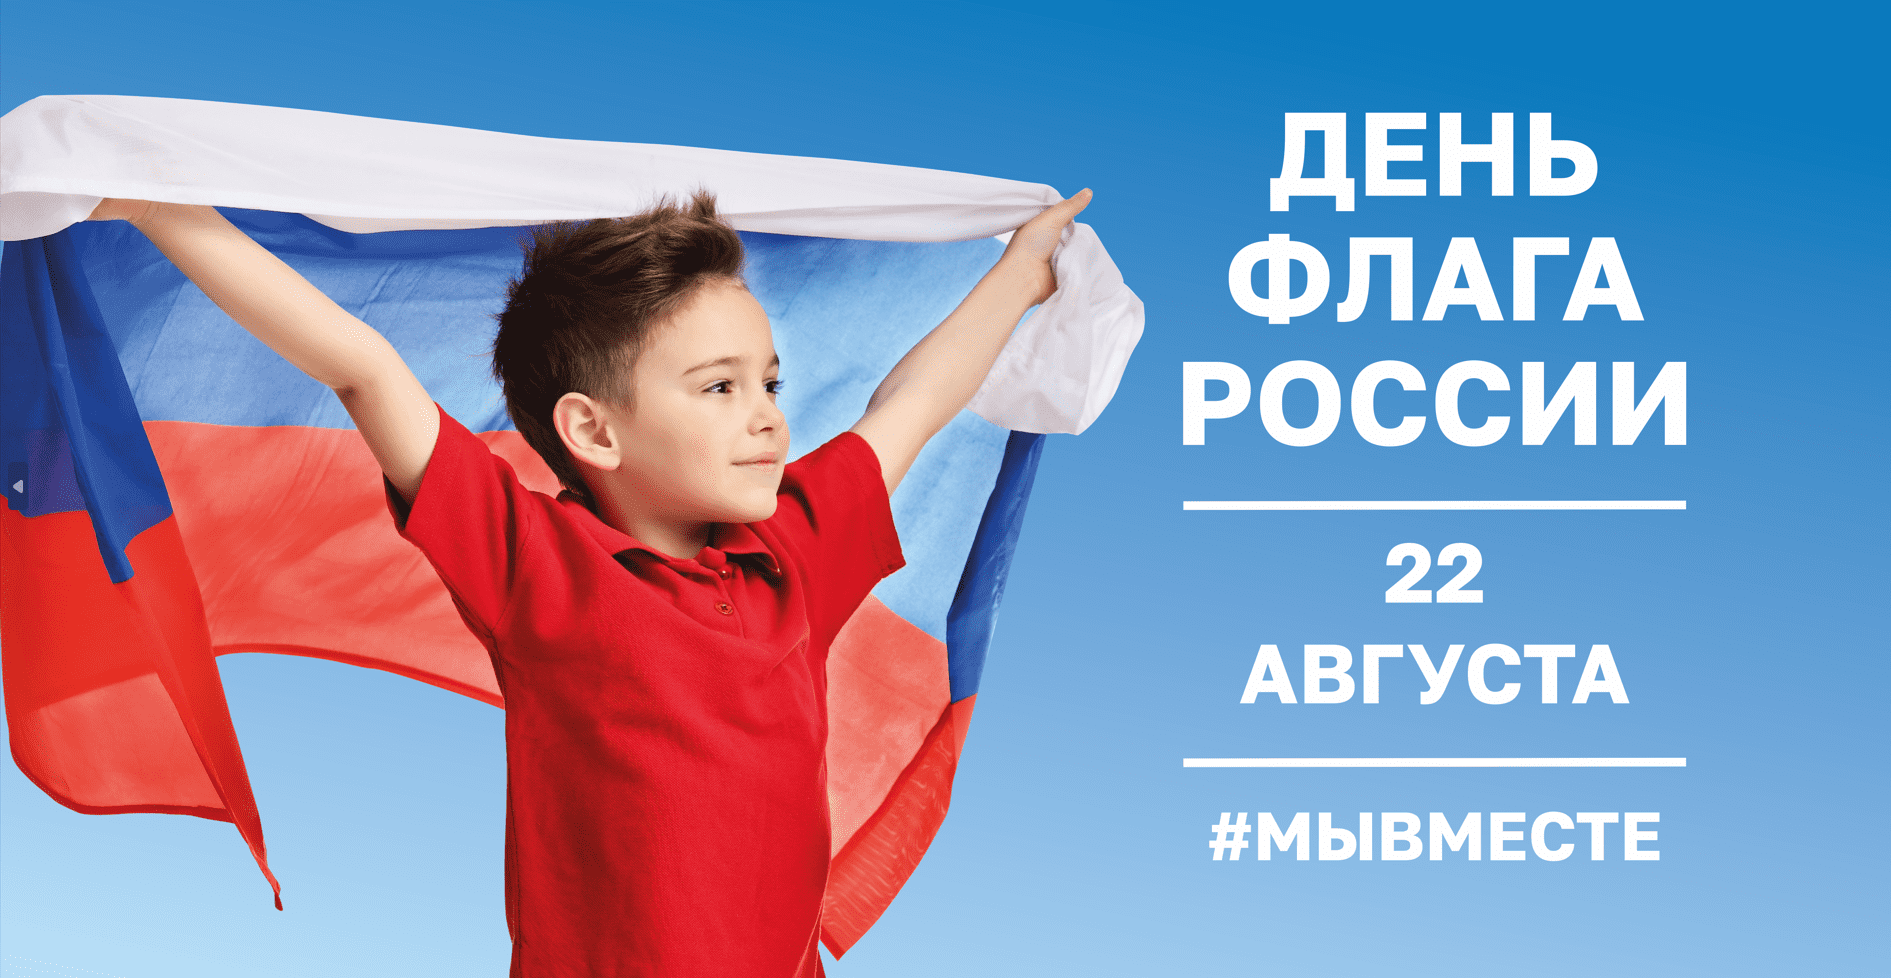 22 августа - День государственного флага России